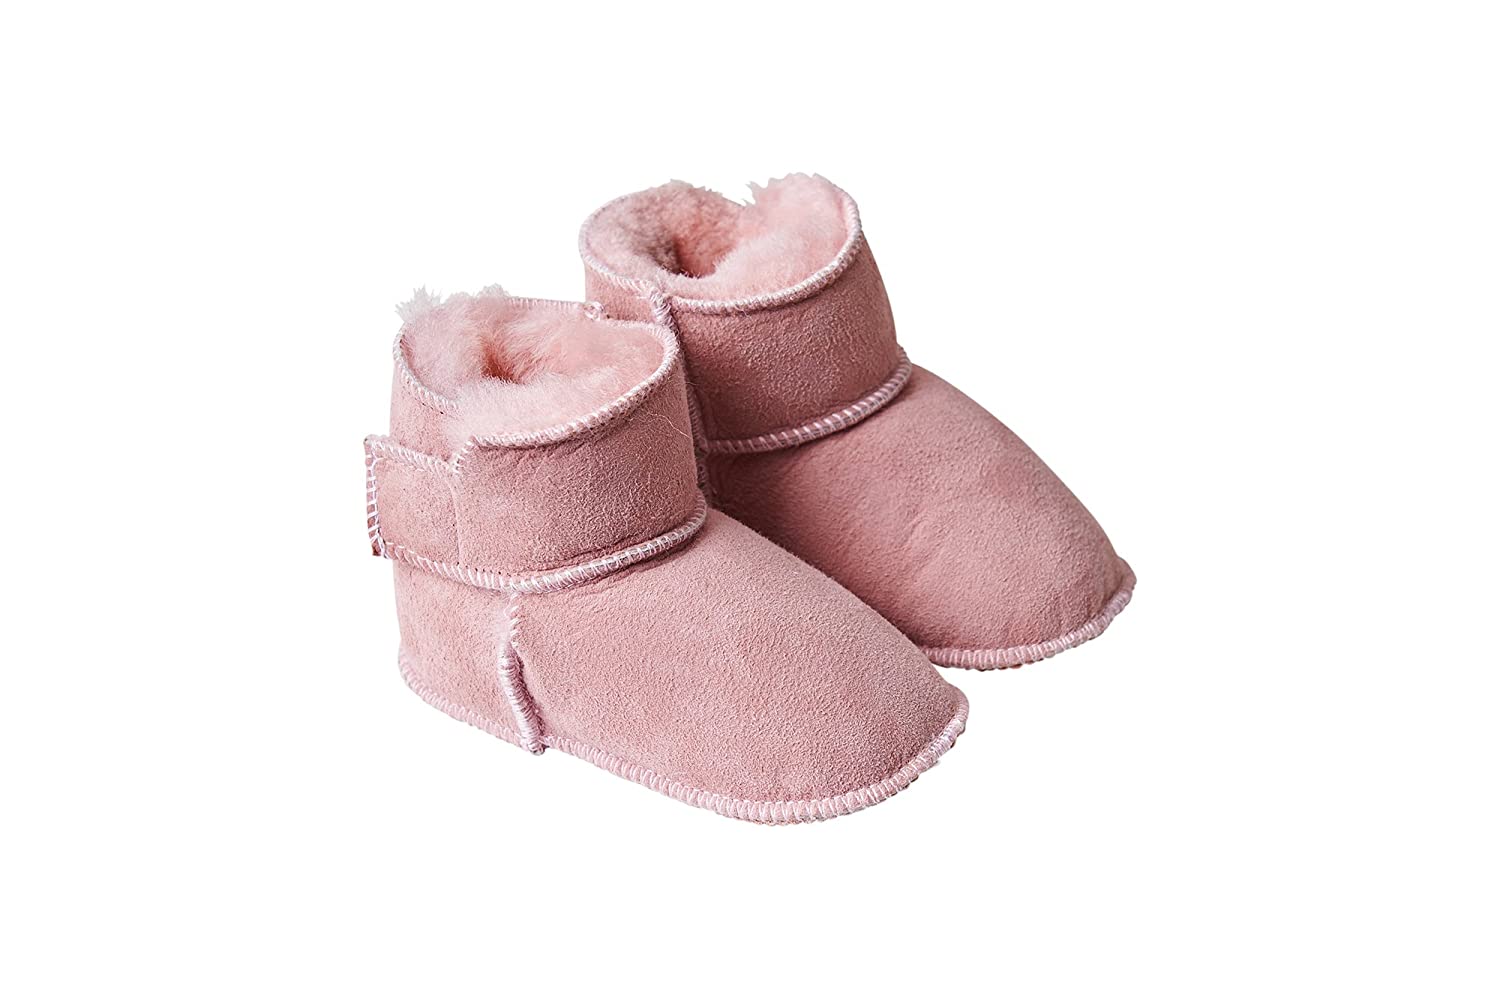 Fellhof 5101 Cuddly Baby Boots, Size 1 (16/17) 18/19